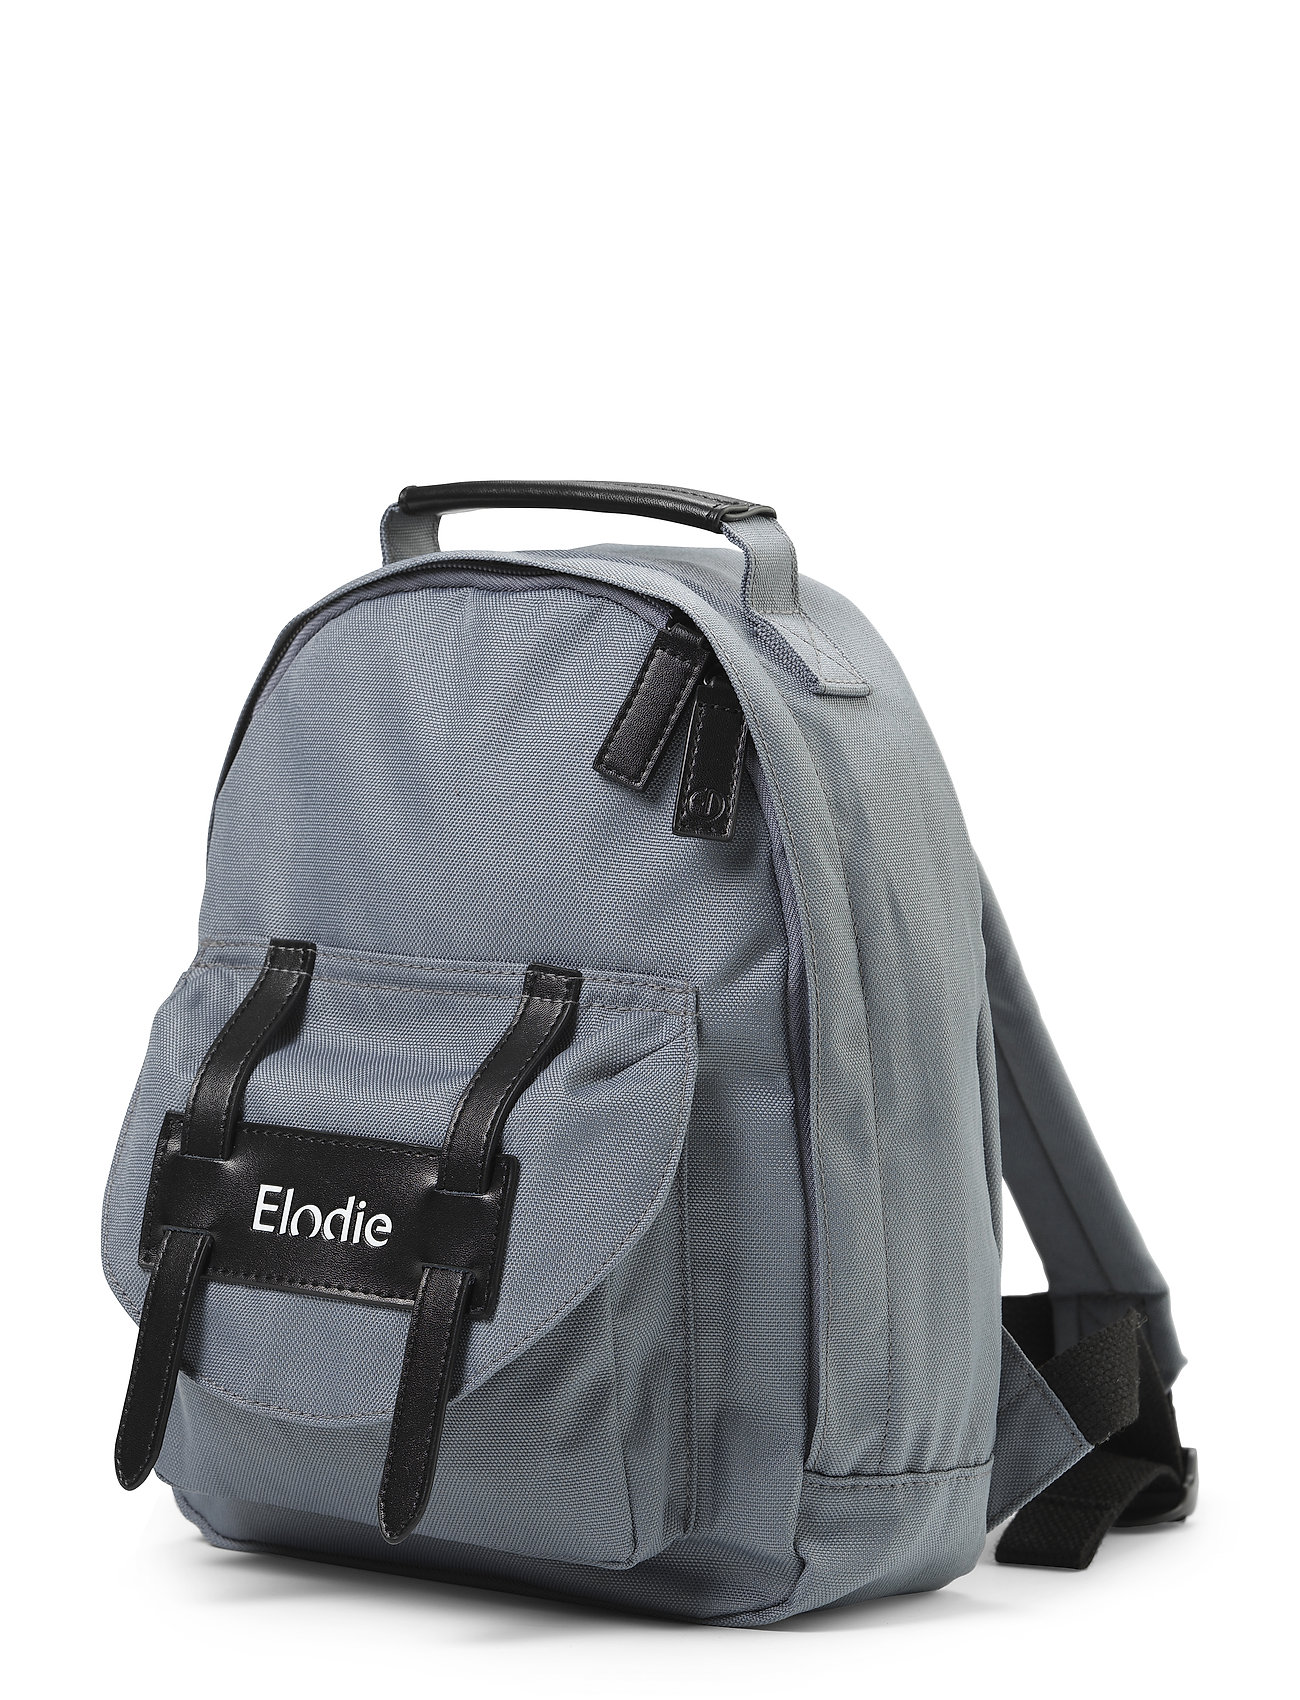 Backpack Mini™ - Tender Blue Accessories Bags Backpacks Sininen Elodie Details